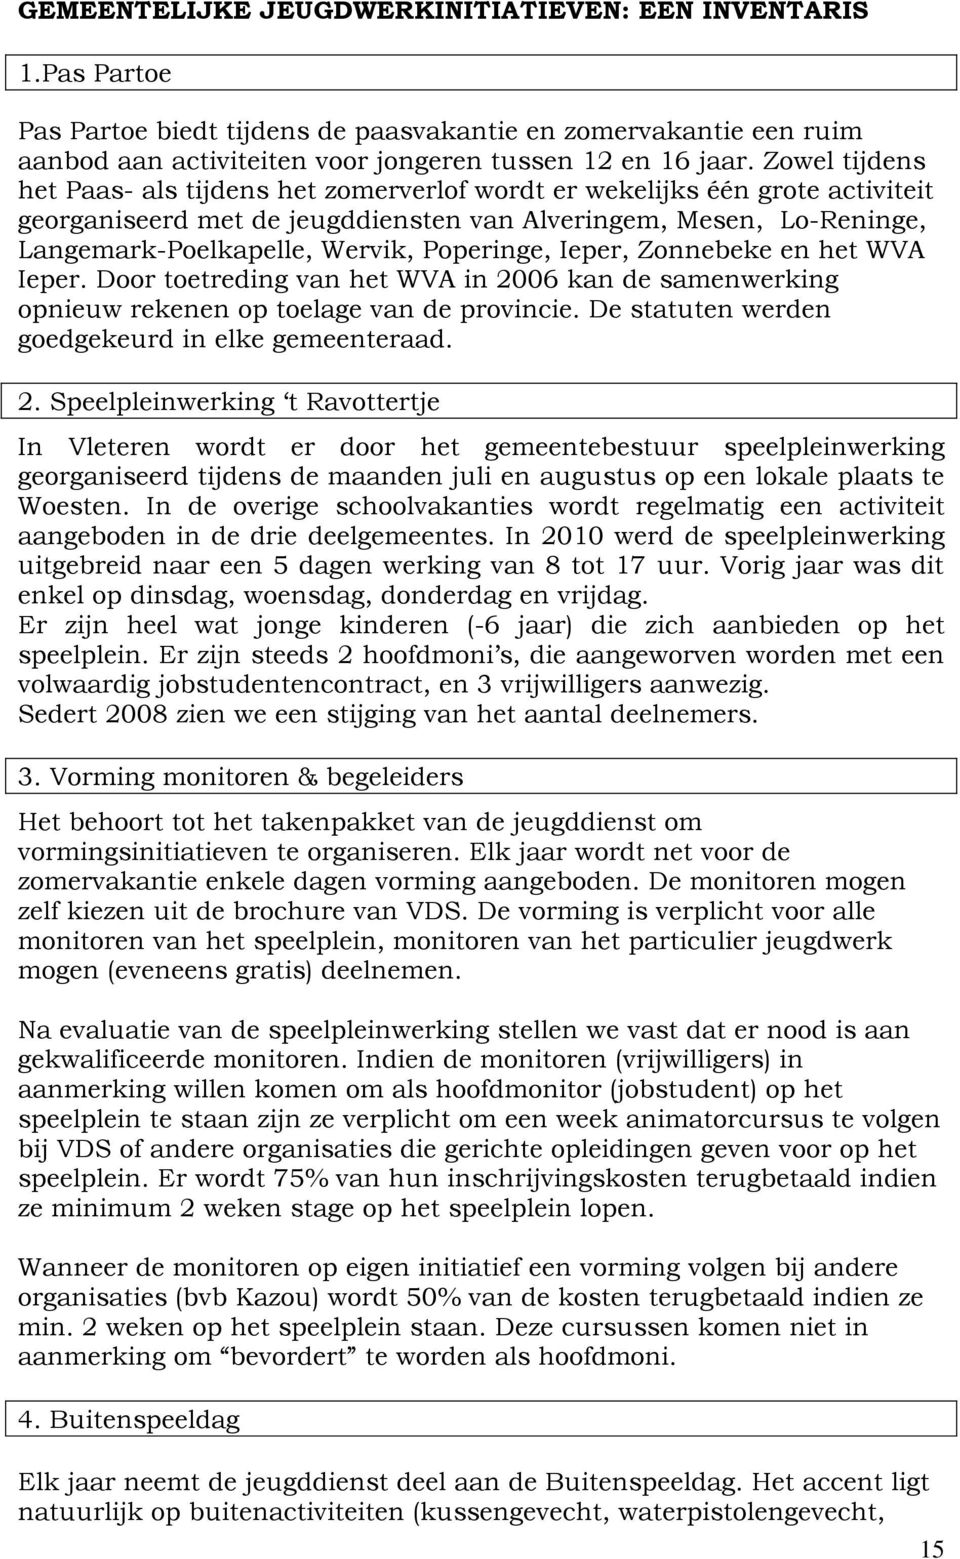 Poperinge, Ieper, Zonnebeke en het WVA Ieper. Door toetreding van het WVA in 2006 kan de samenwerking opnieuw rekenen op toelage van de provincie. De statuten werden goedgekeurd in elke gemeenteraad.